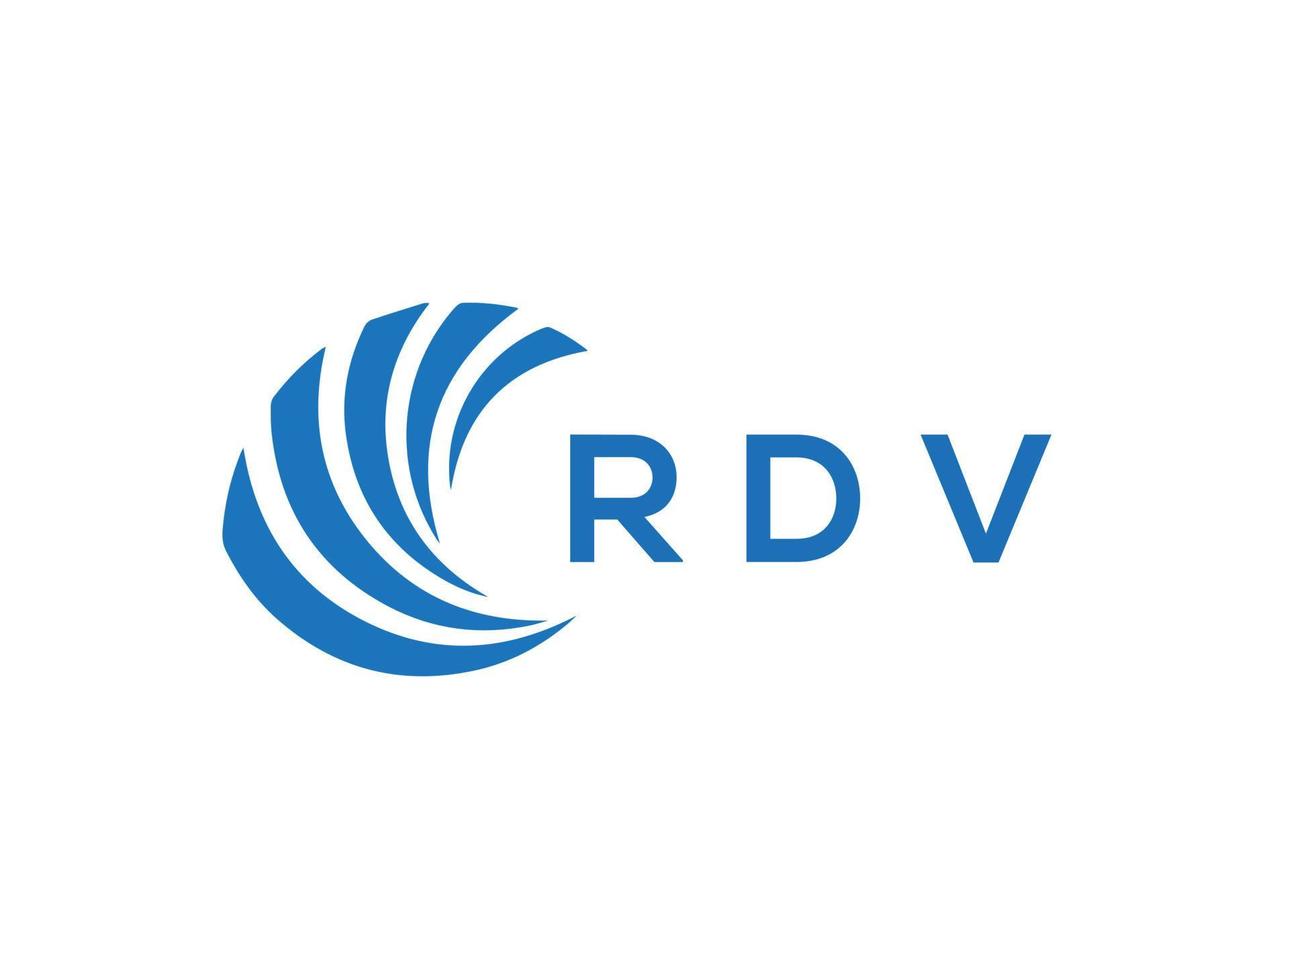 RDV letter logo design on white background. RDV creative circle letter logo concept. RDV letter design. vector